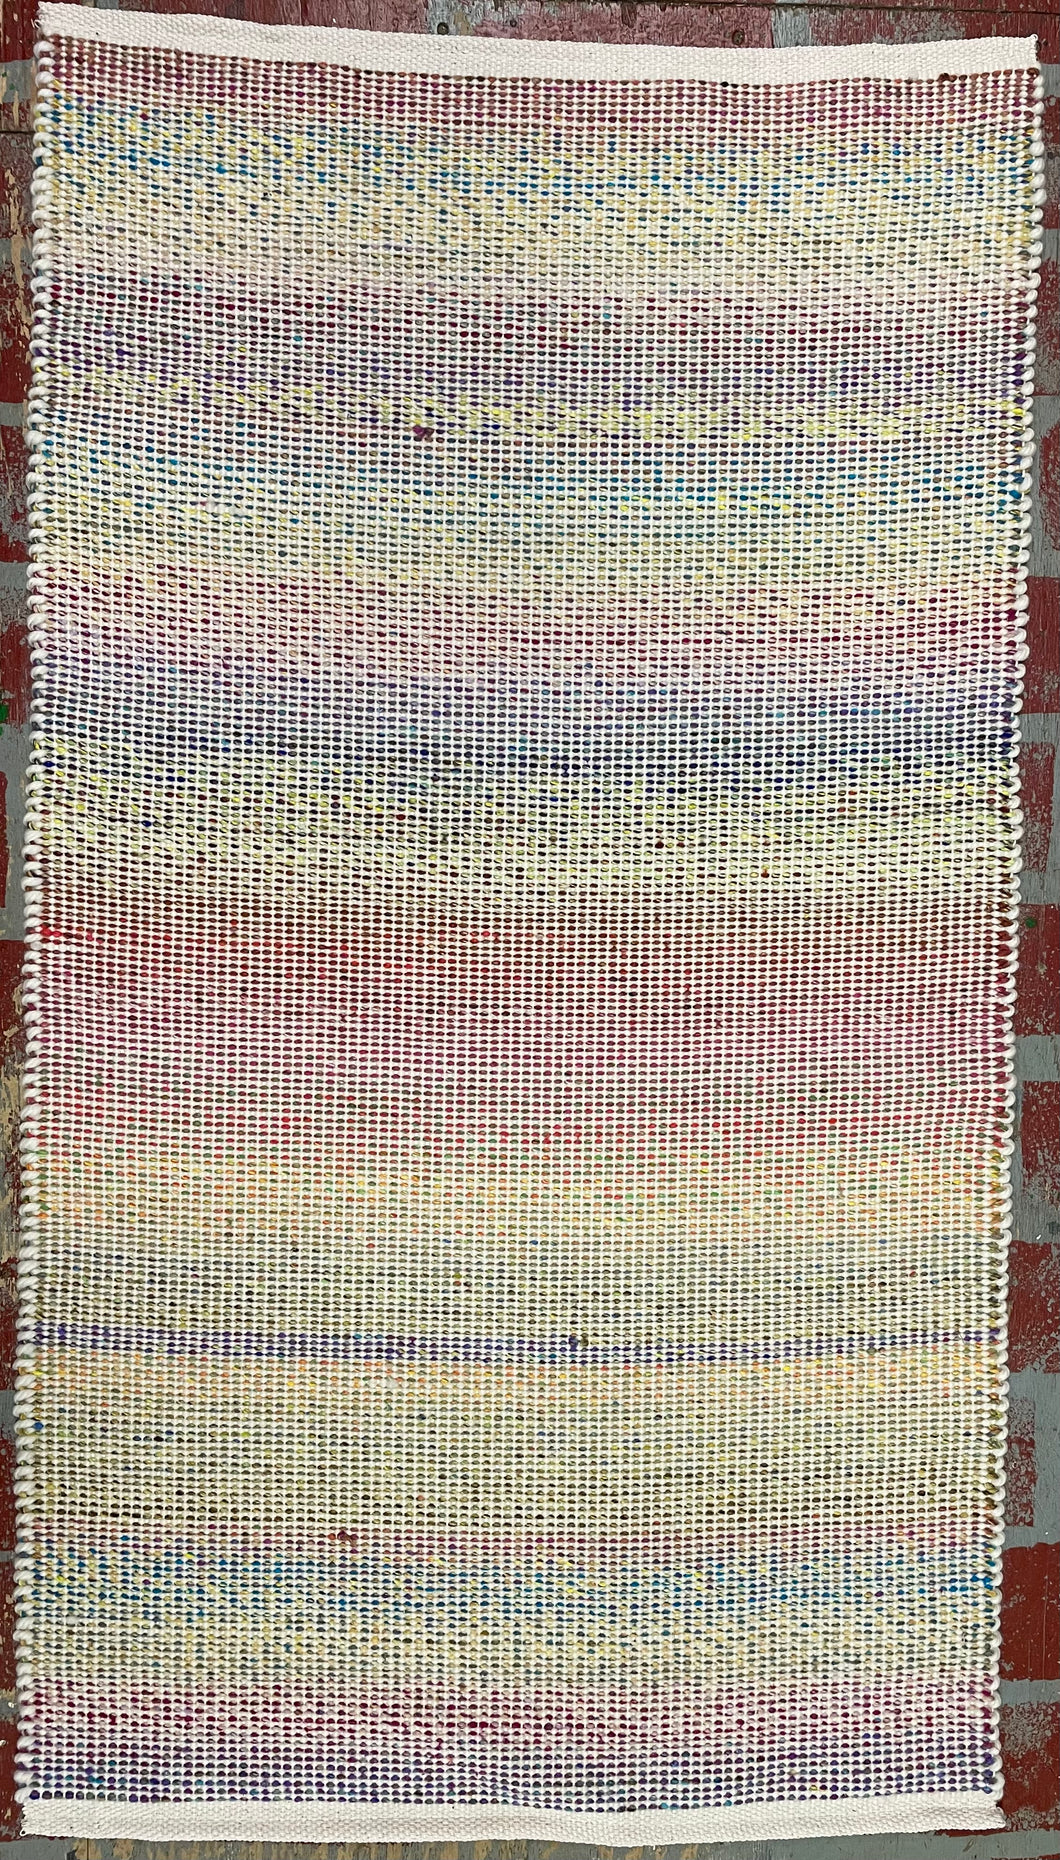 Multicolored Noro and cream colored yarns; 27” x 48”